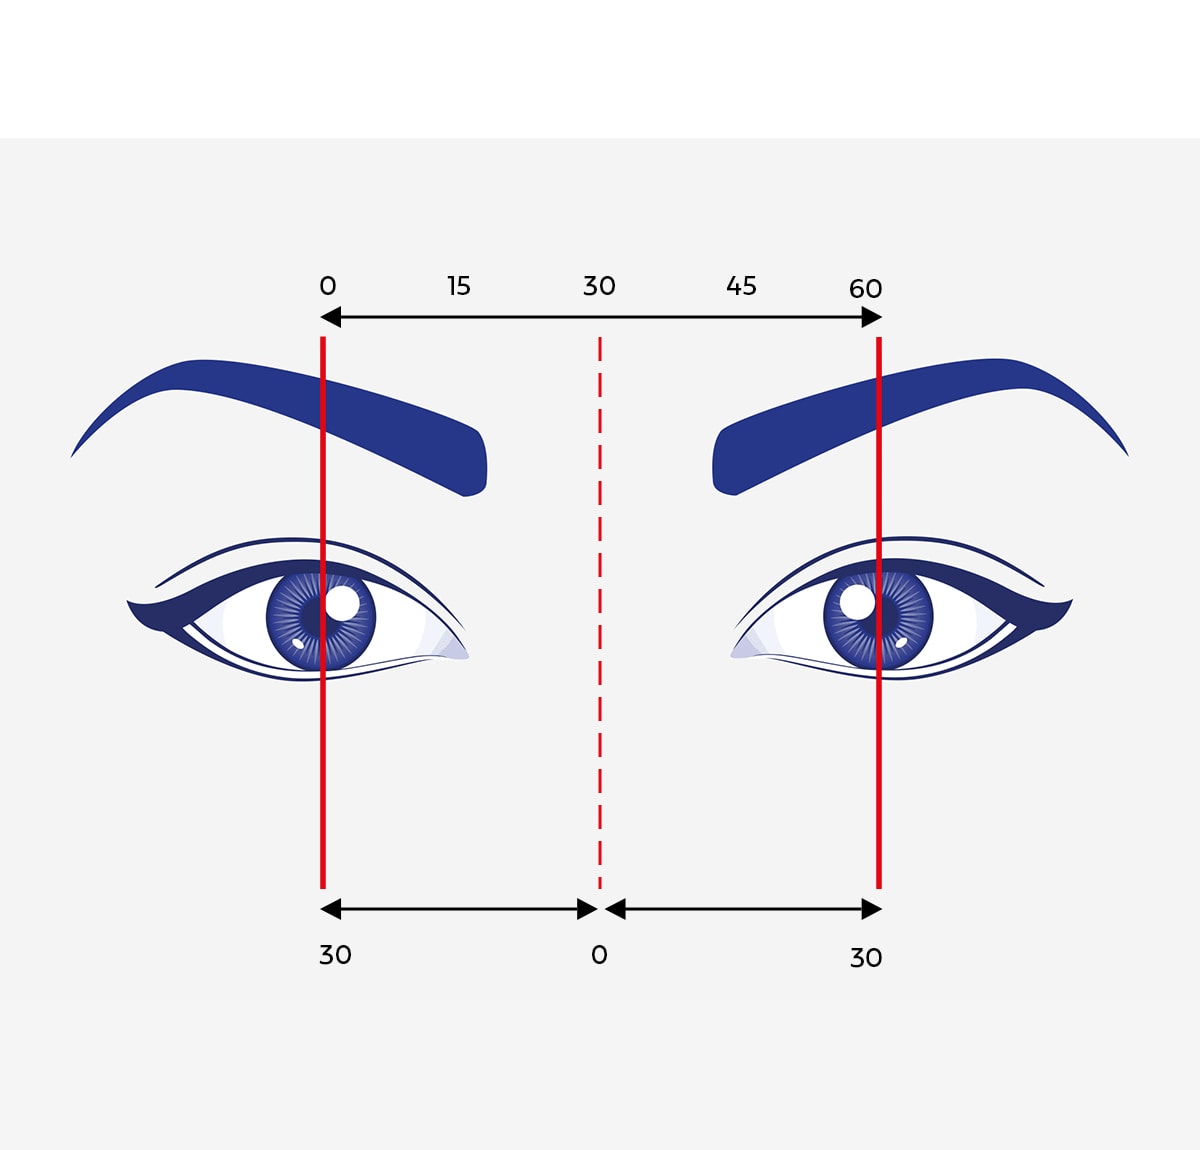 Grafisk representasjon av øyne, markert med piler og målinger som beskriver pupillavstand.